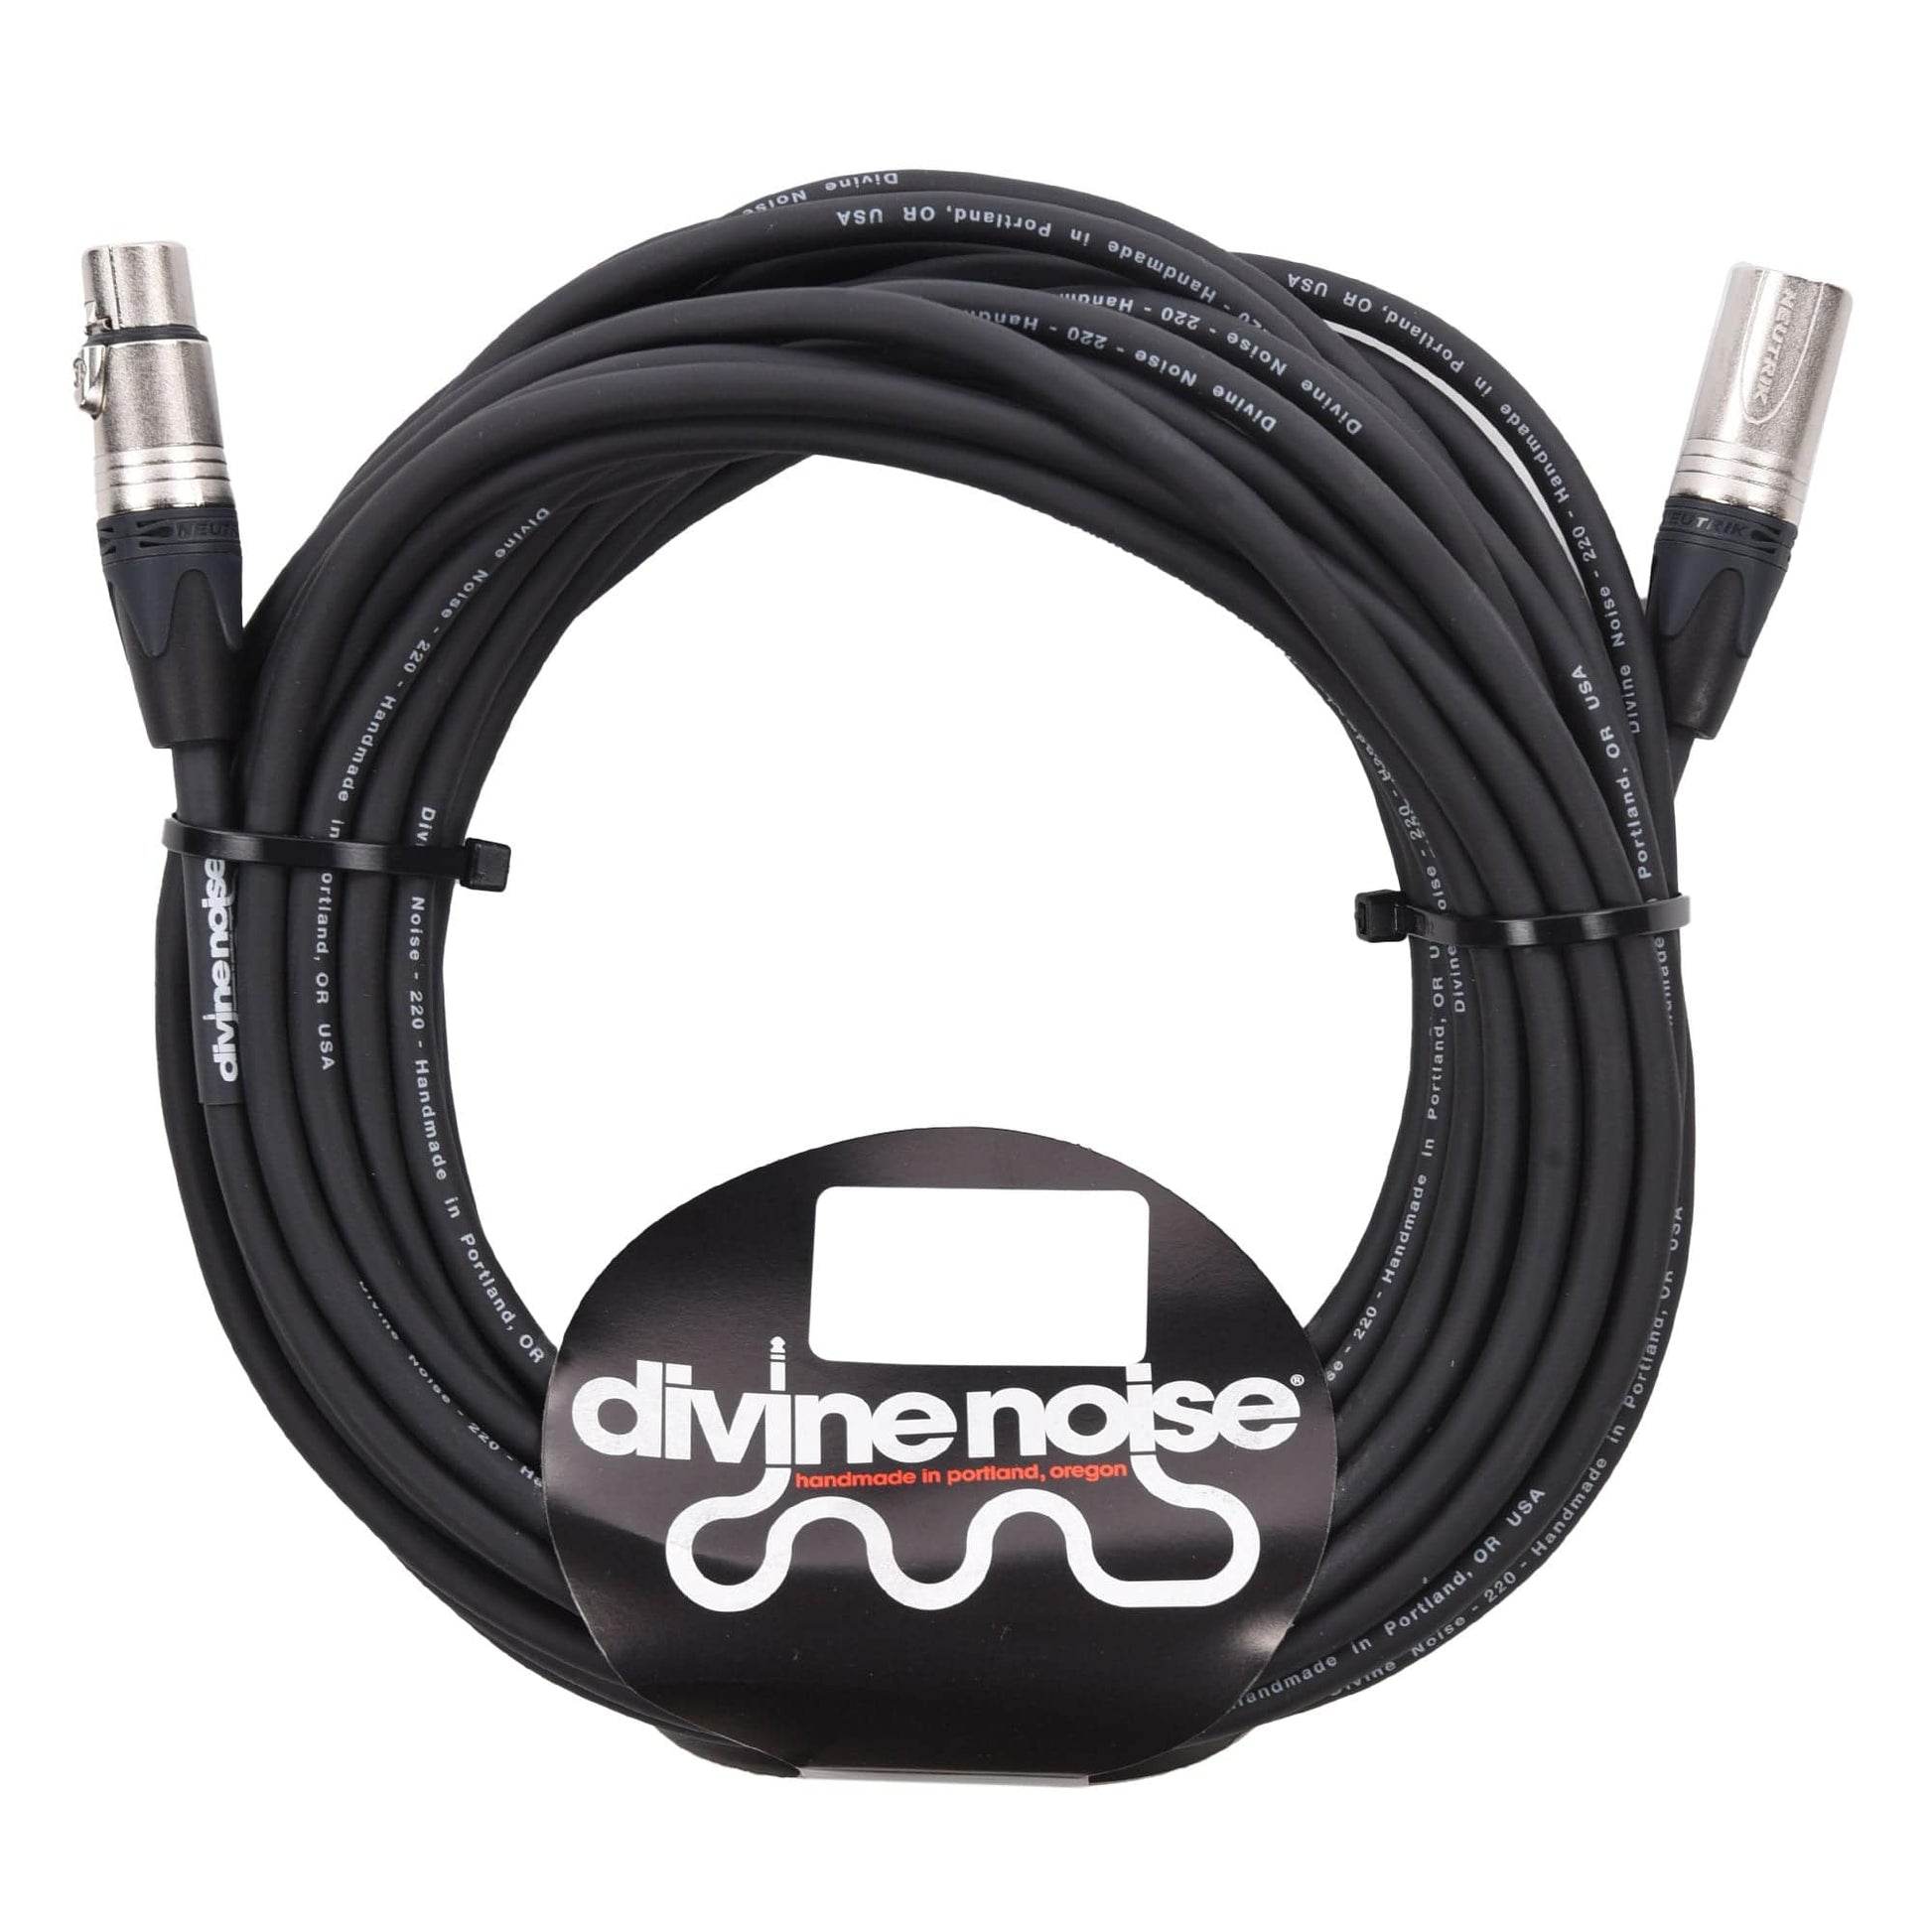 Divine Noise XLR 220 Cable Black 50' Male-Female Accessories / Cables